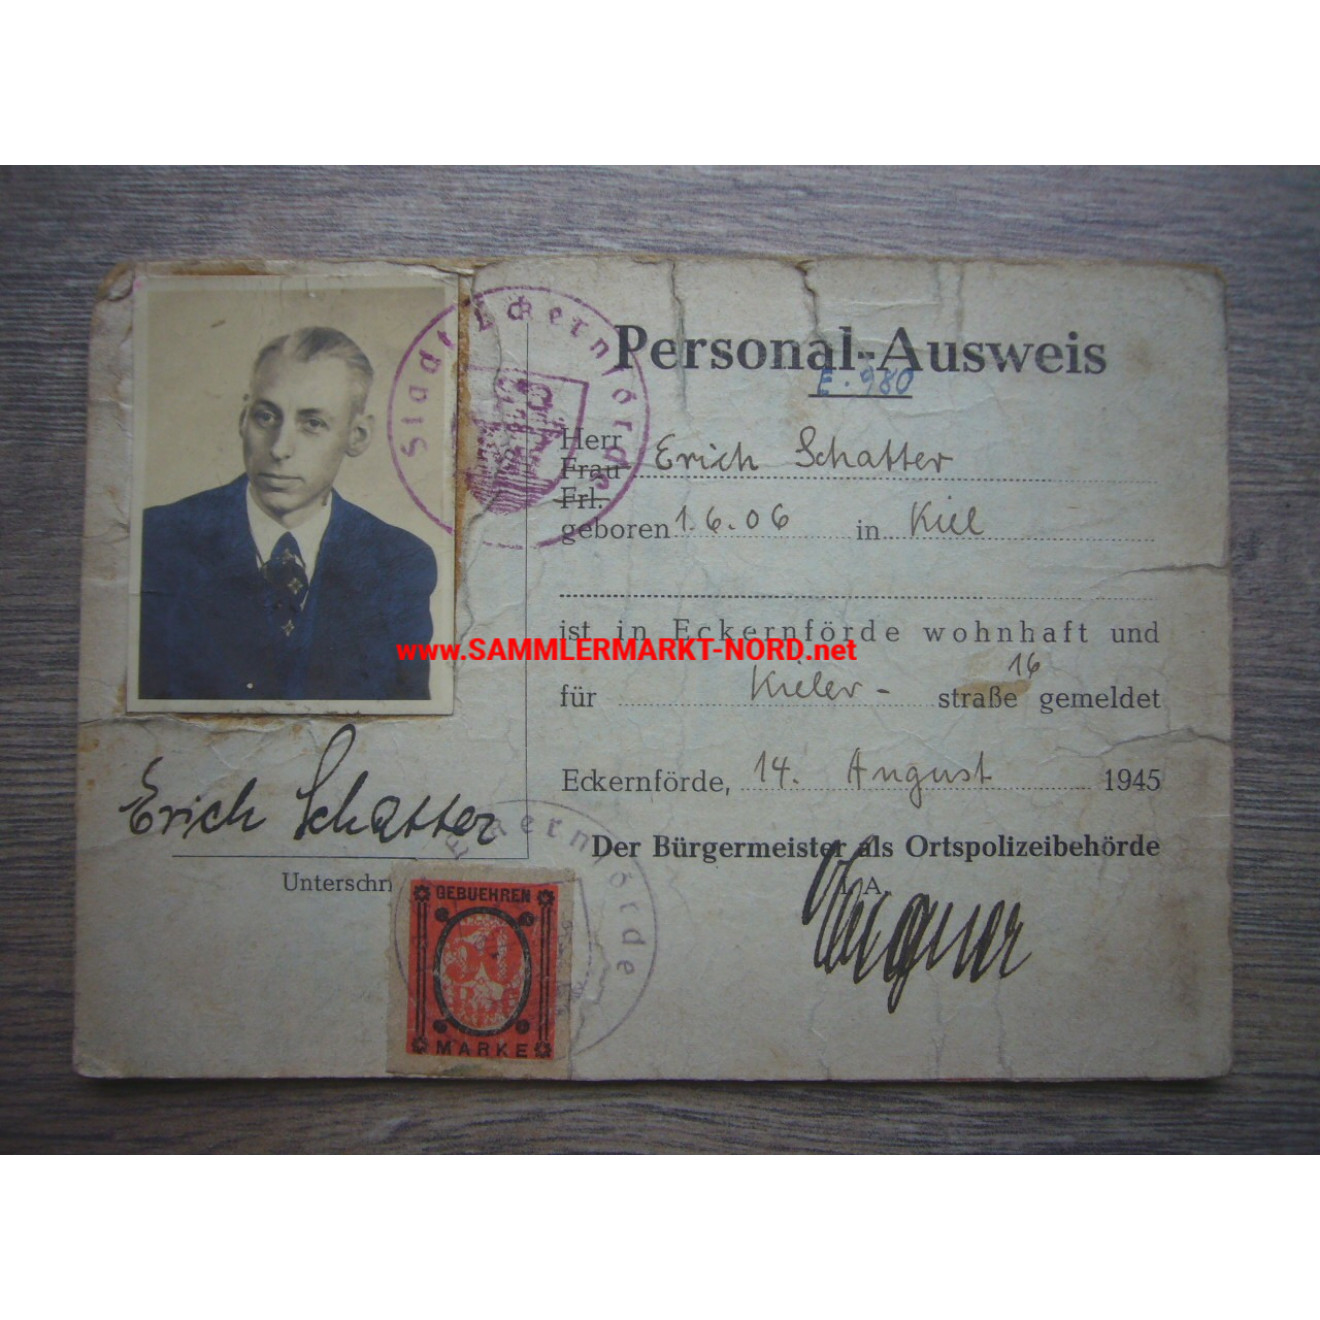 Eckernförde 14.8.1945 - Personalausweis